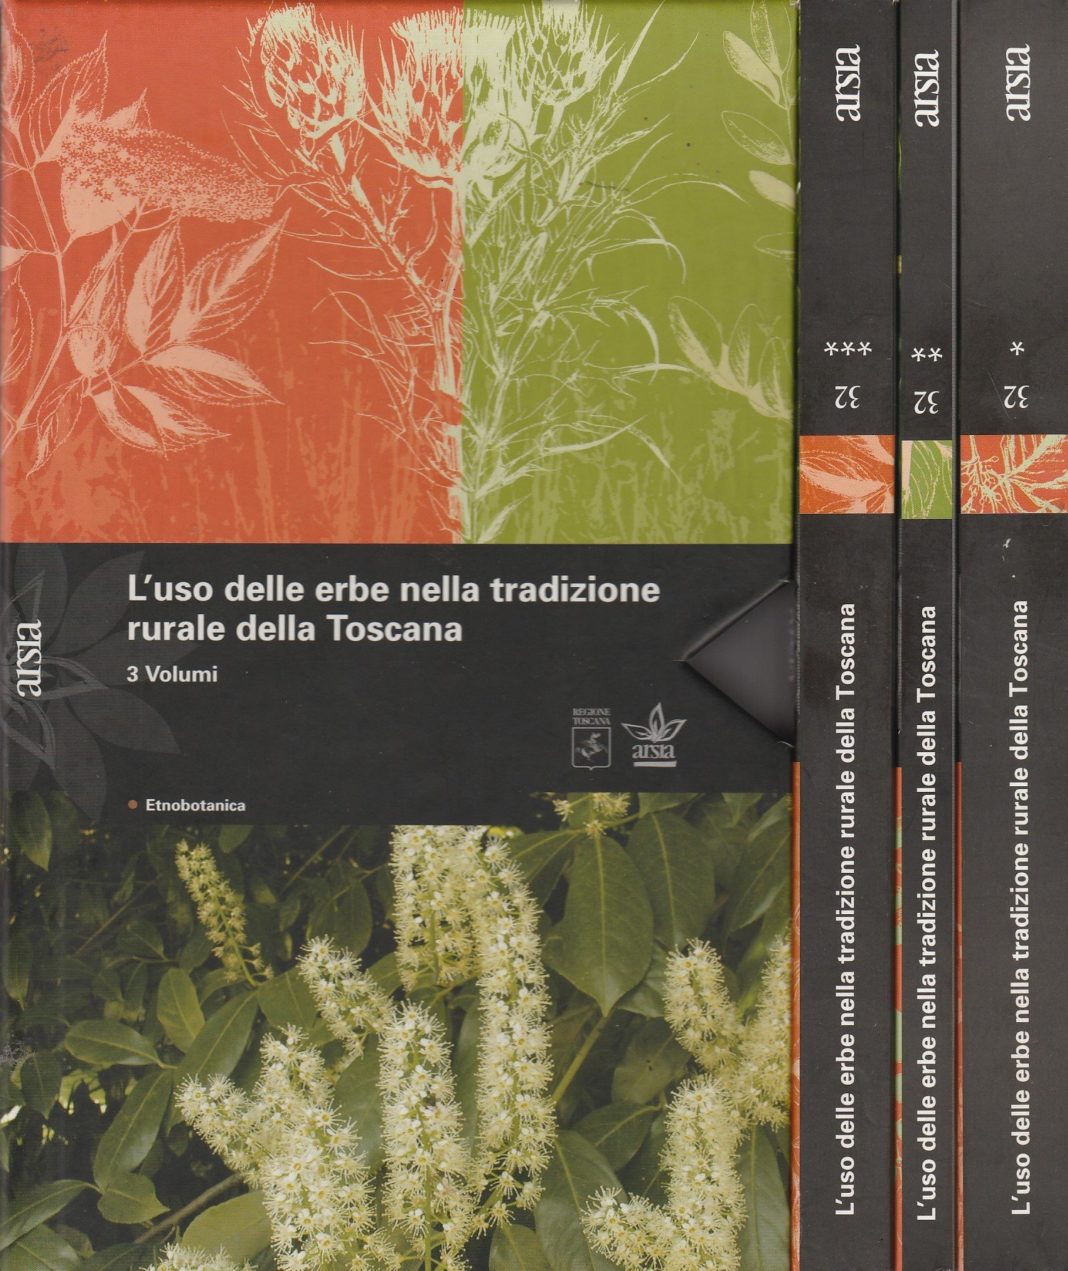 L’uso delle erbe nella tradizione rurale della Toscana